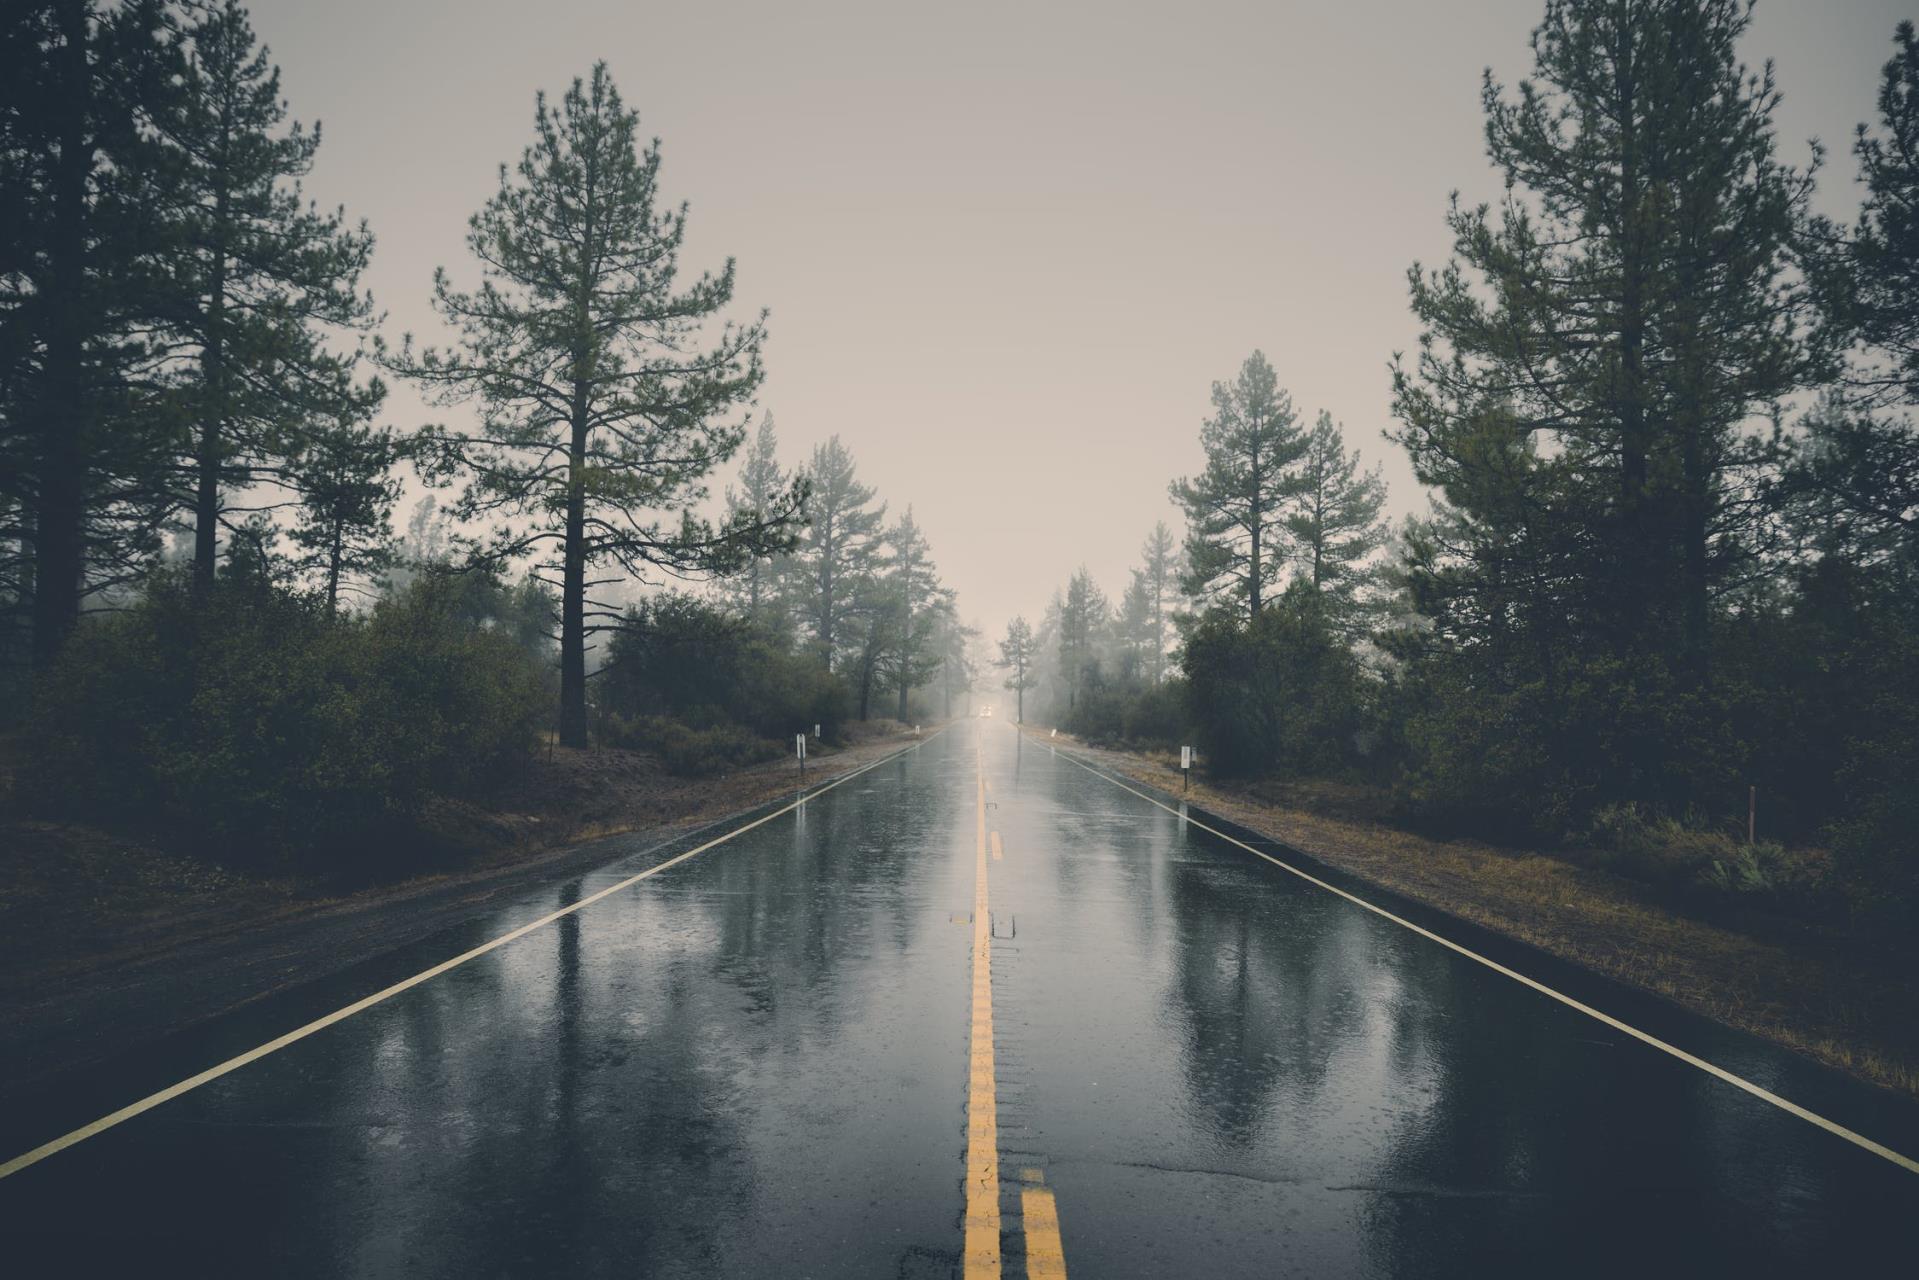 Road between pines